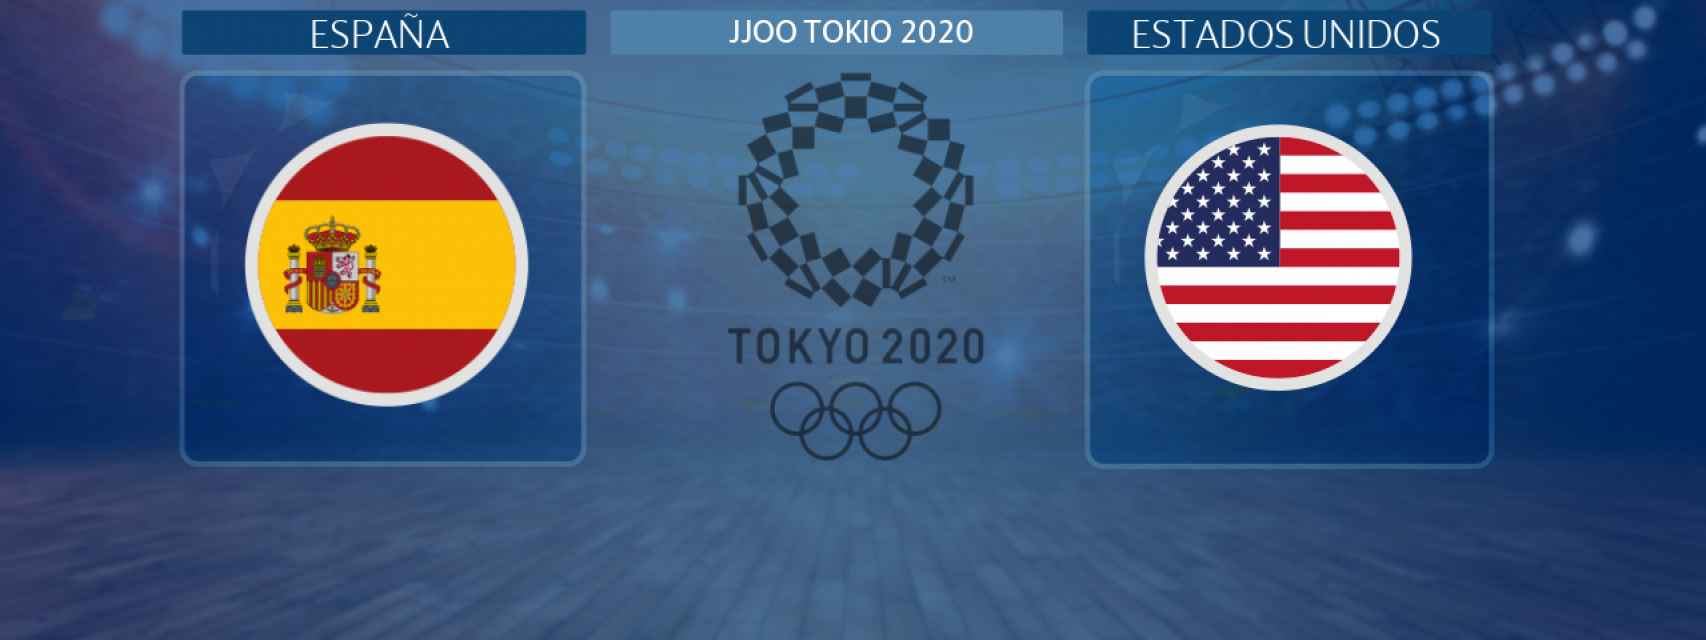 España - Estados Unidos: siga en directo el partido de baloncesto masculino de los JJOO Tokio 2020